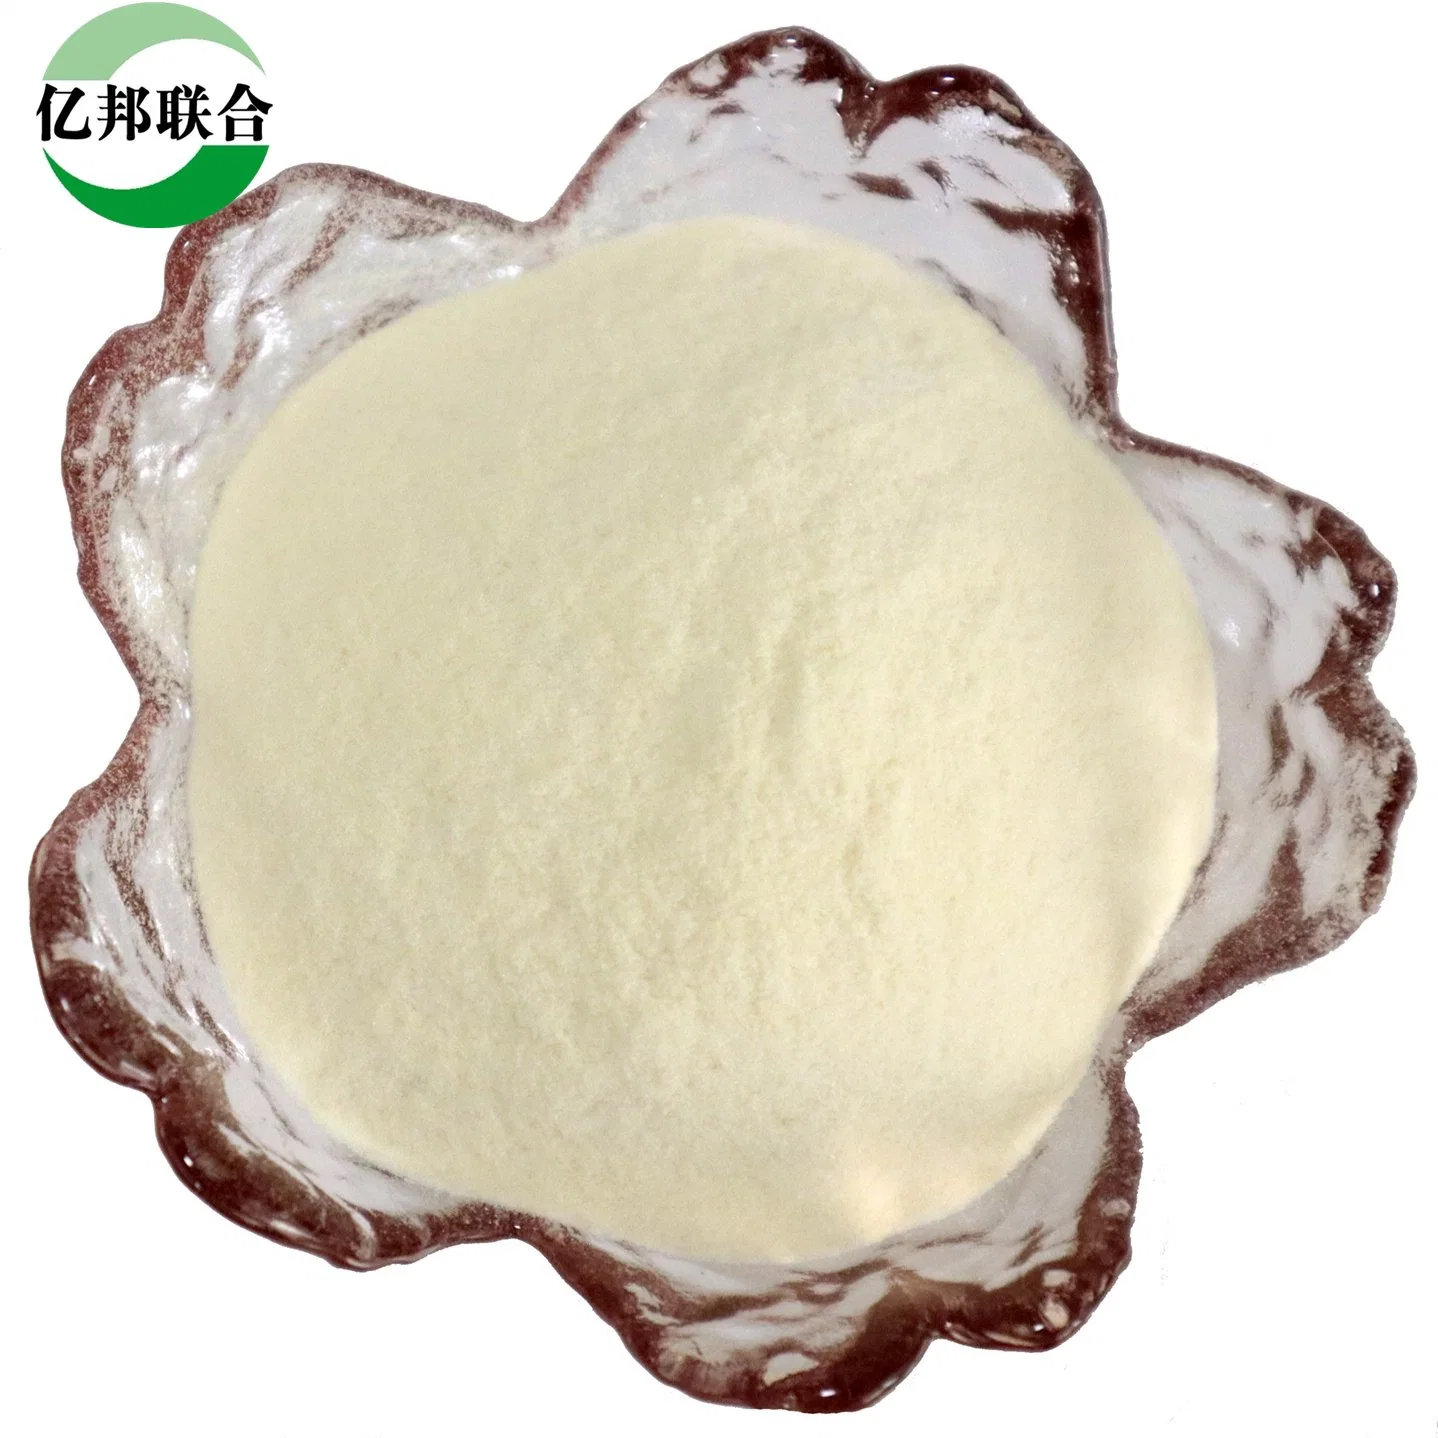 Le gypse additifs l'hydroxypropylméthyl Cellulosegypsum additifs l'hydroxypropylméthyl cellulose / HPMC Poudre blanche